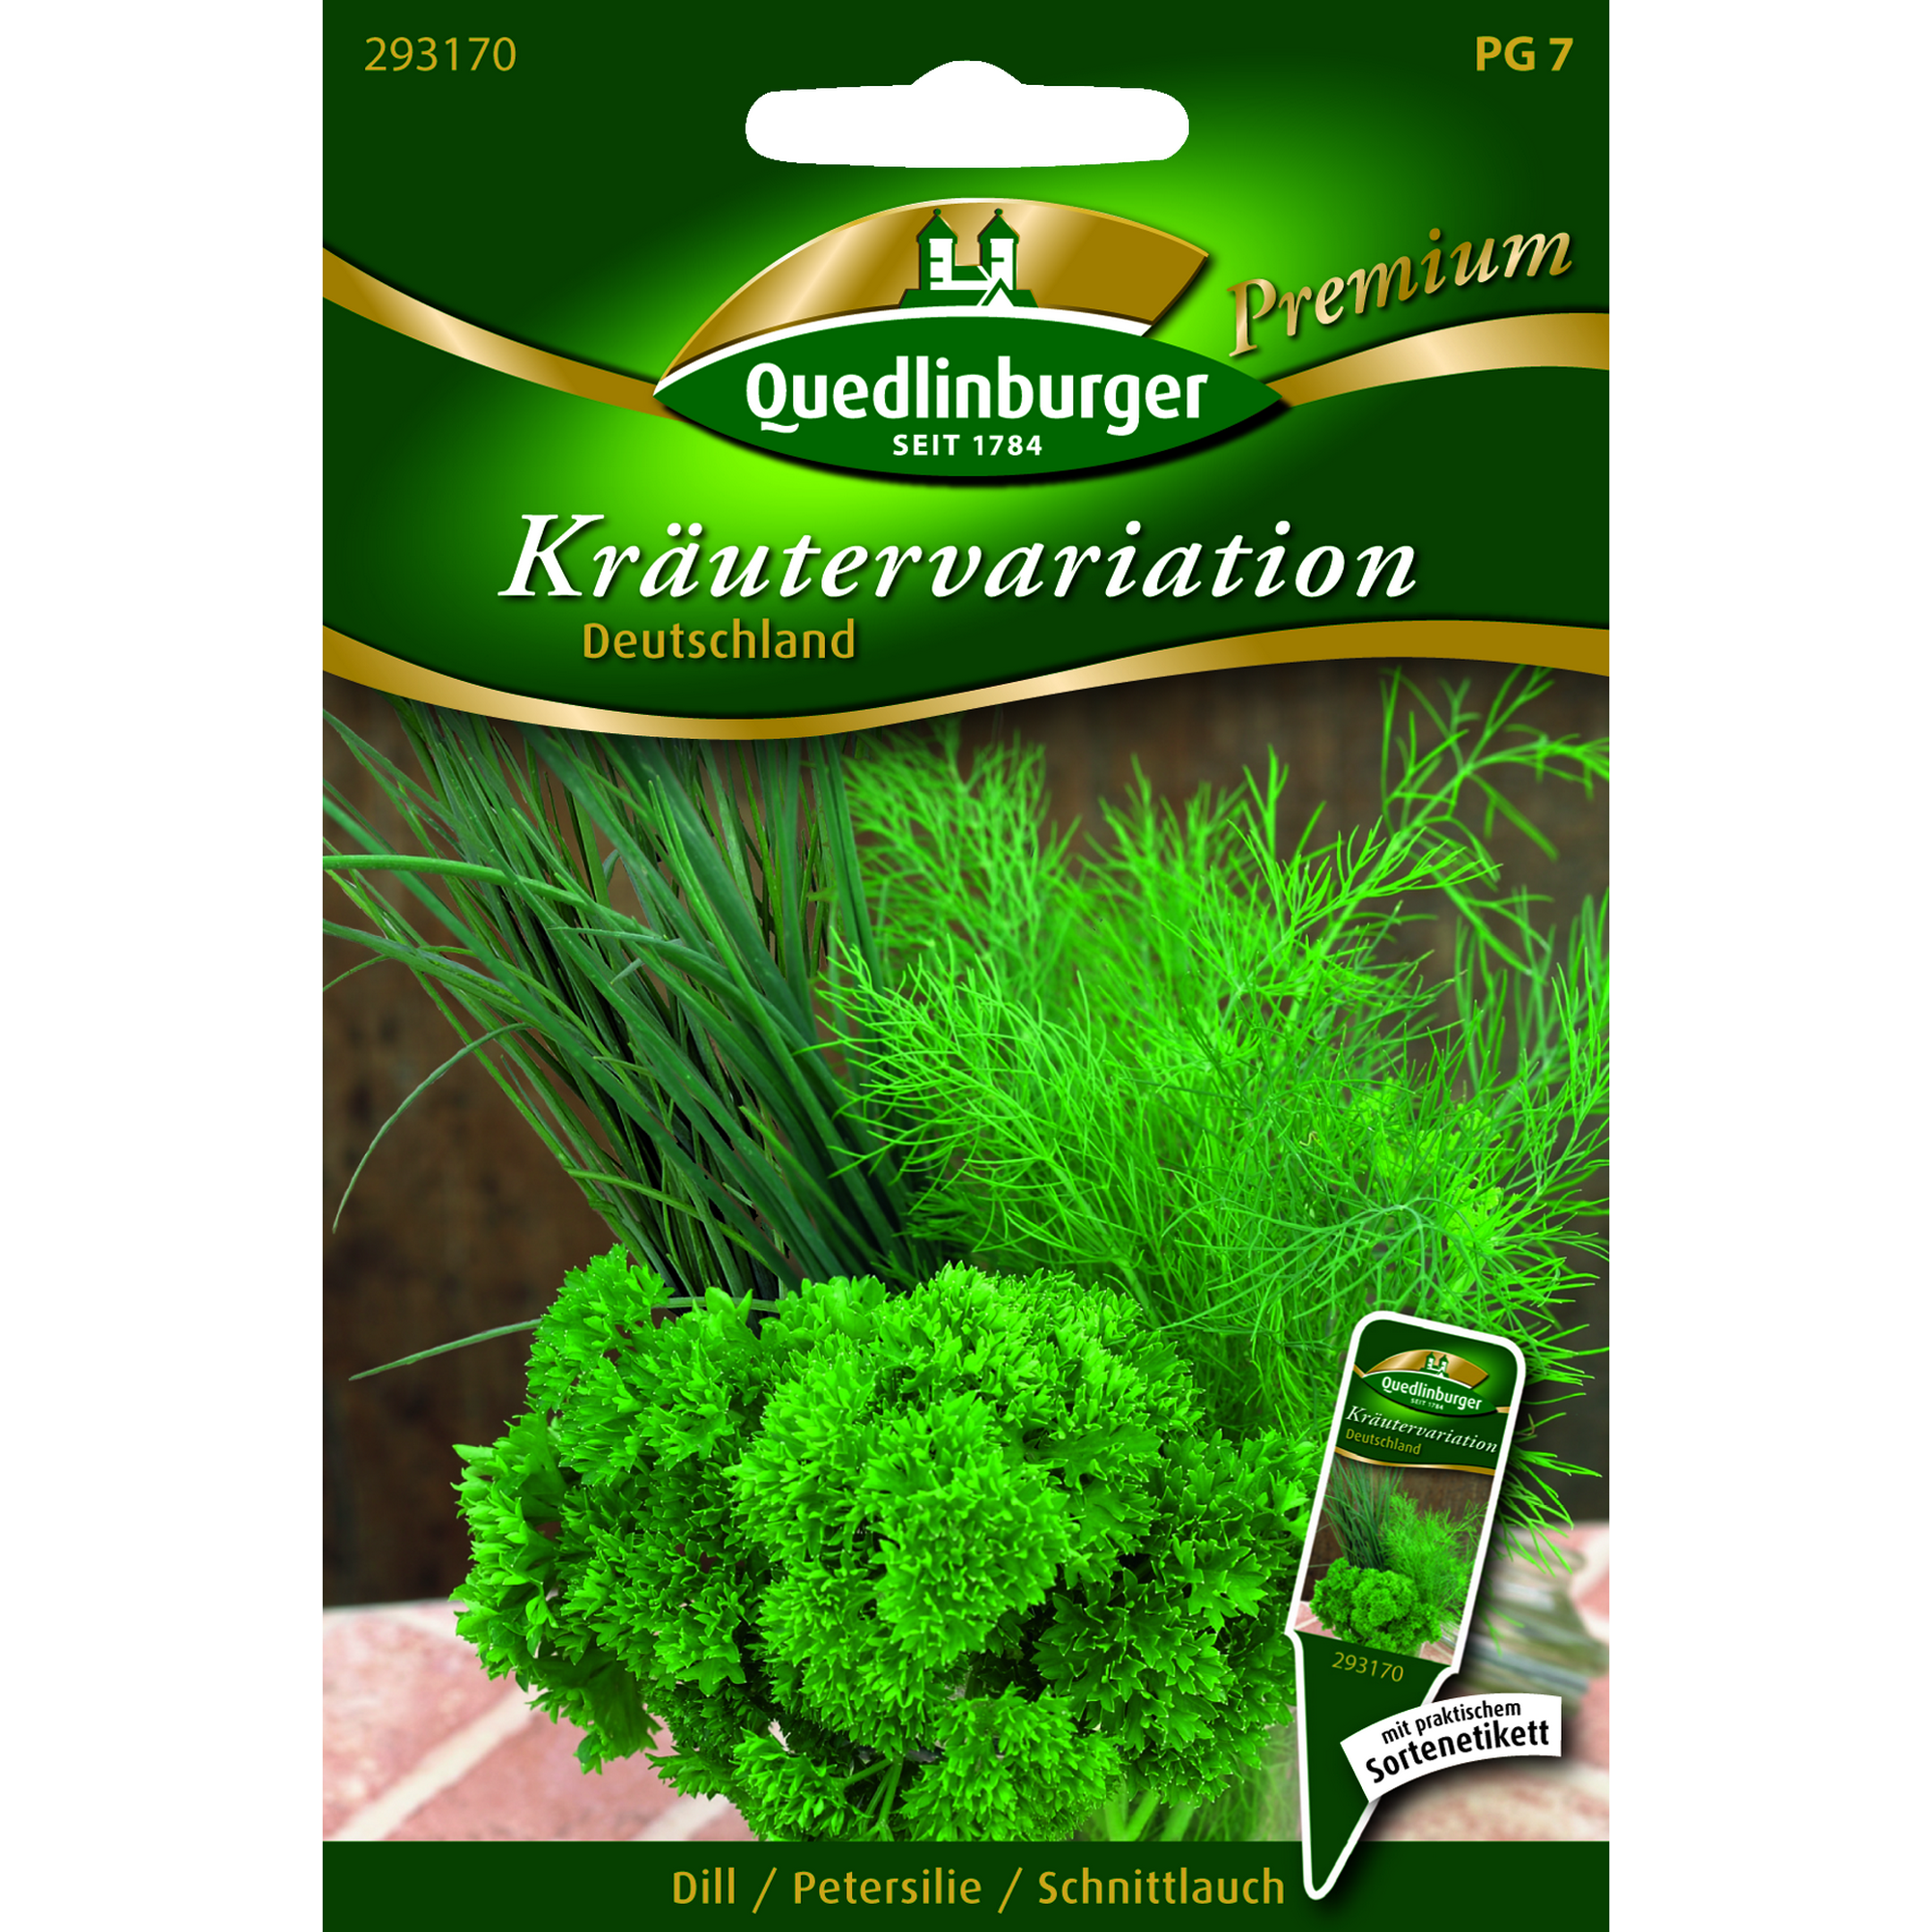 Premium Kräutervariation 'Deutschland' + product picture